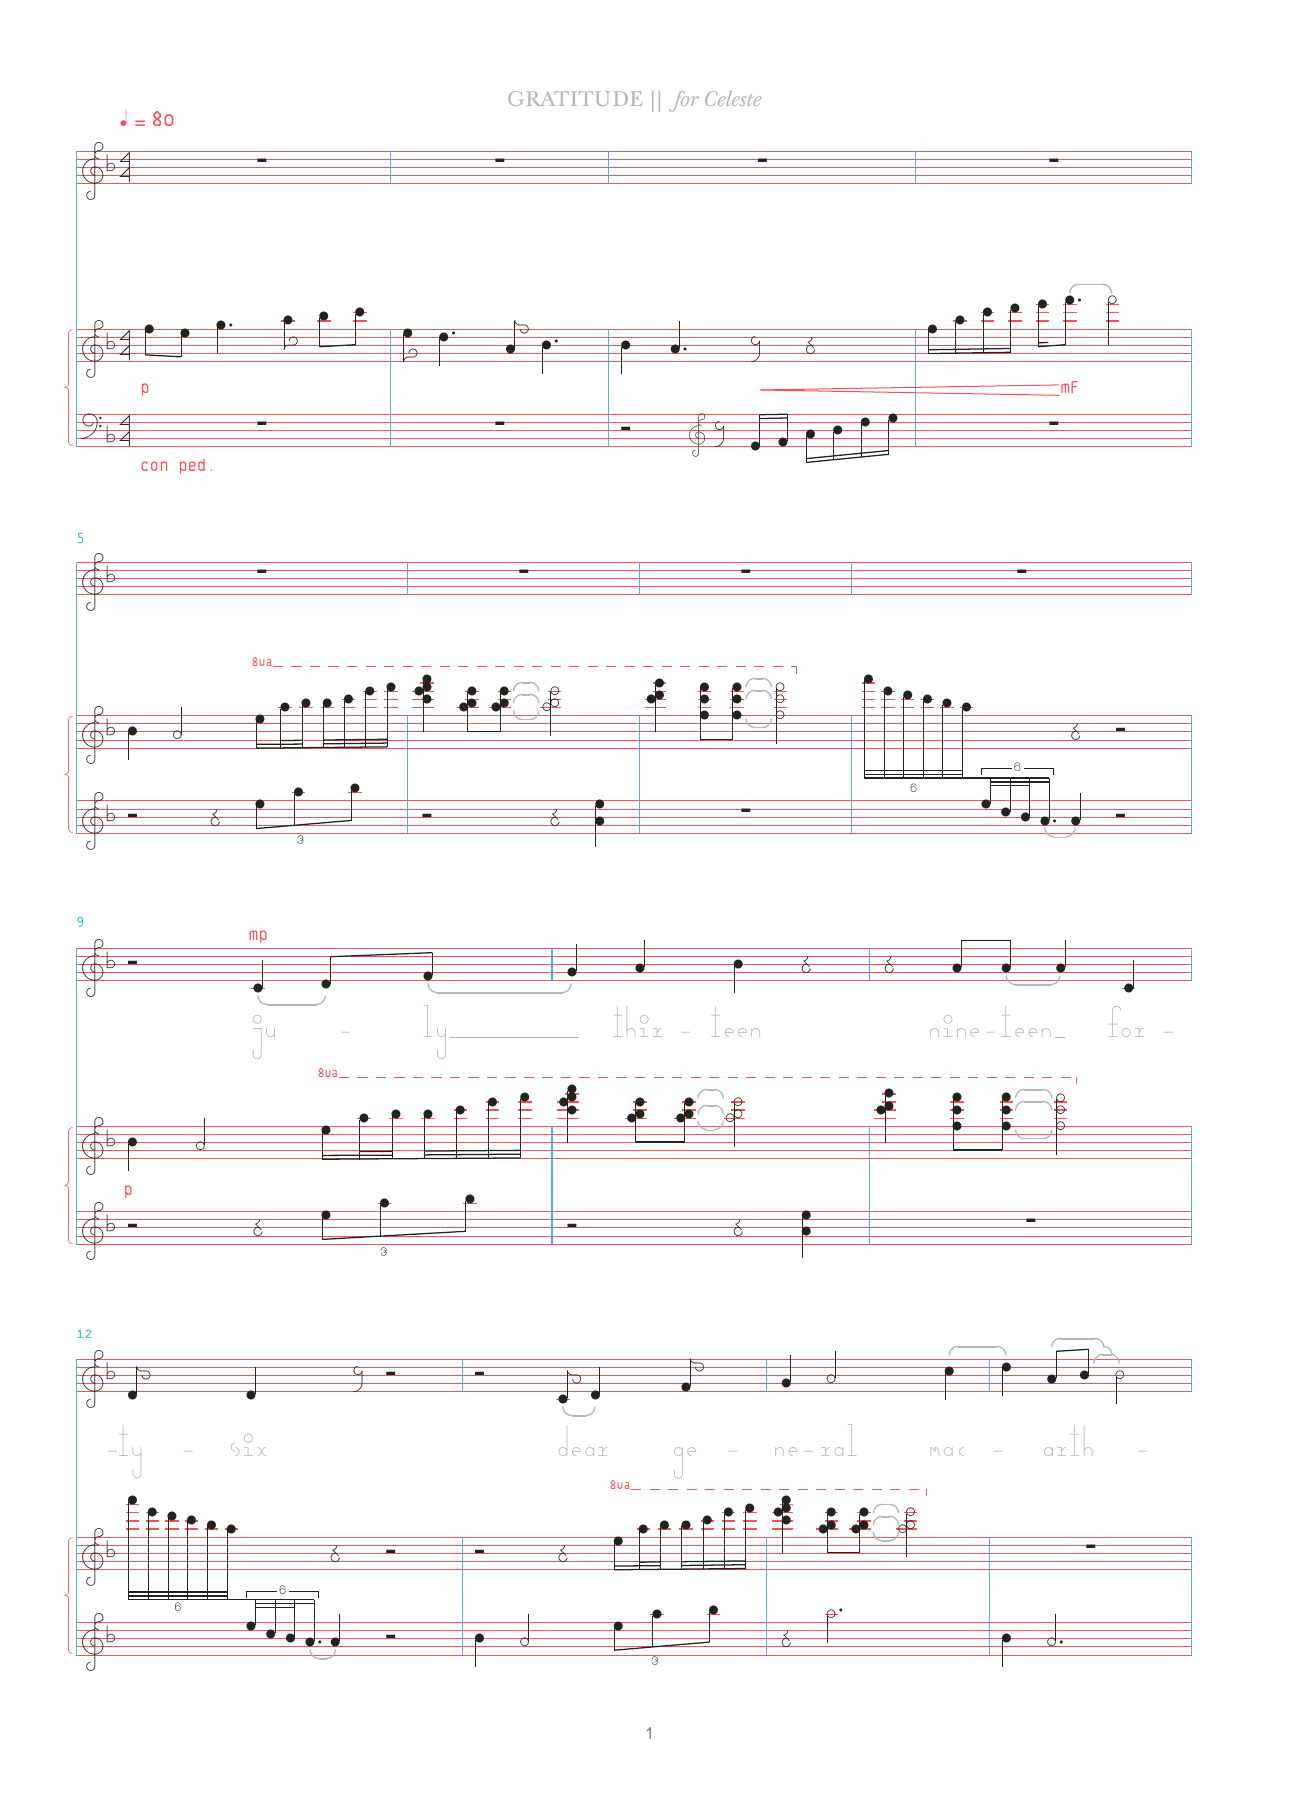 Bjork Gratitude Sheet Music Notes & Chords for Celeste & Vocal - Download or Print PDF